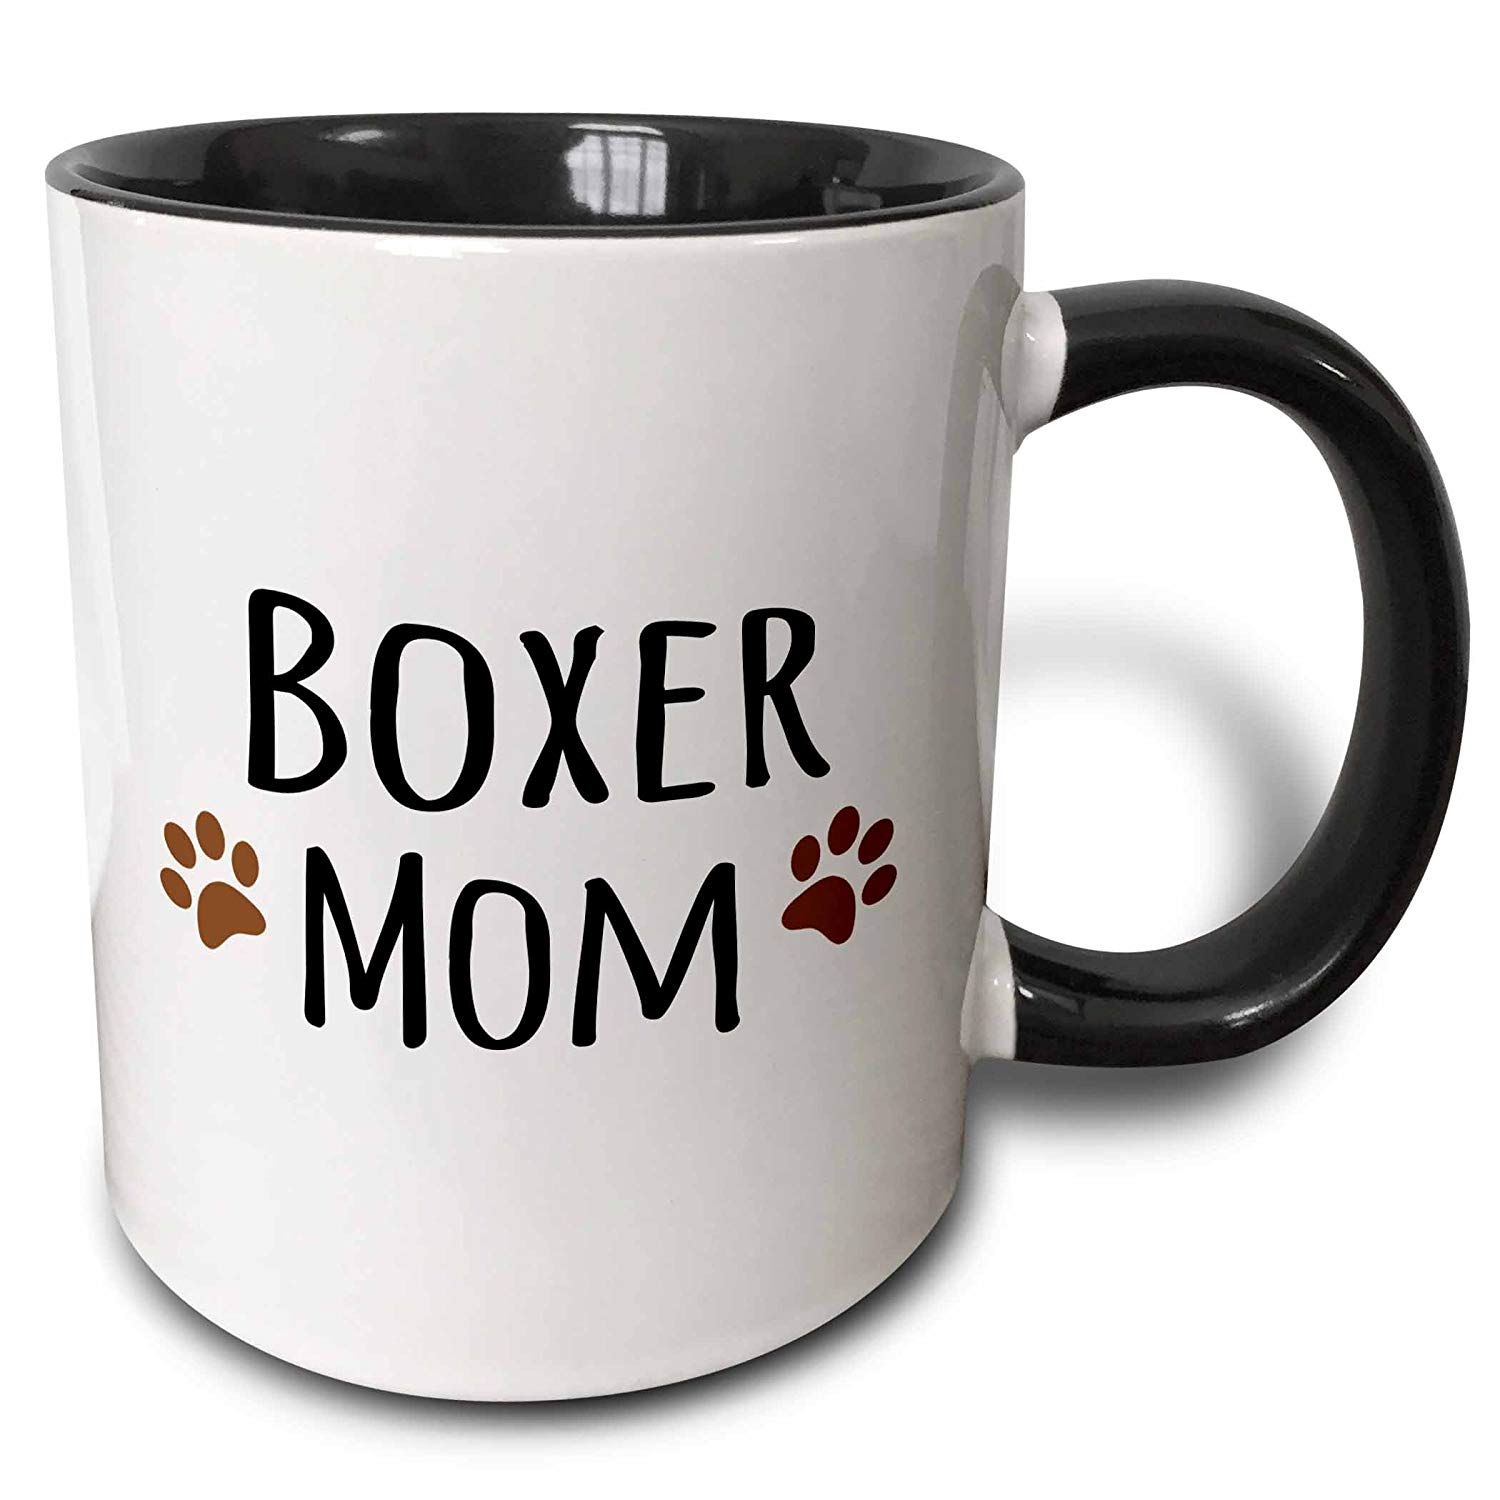 A white mug with - Boxer mom